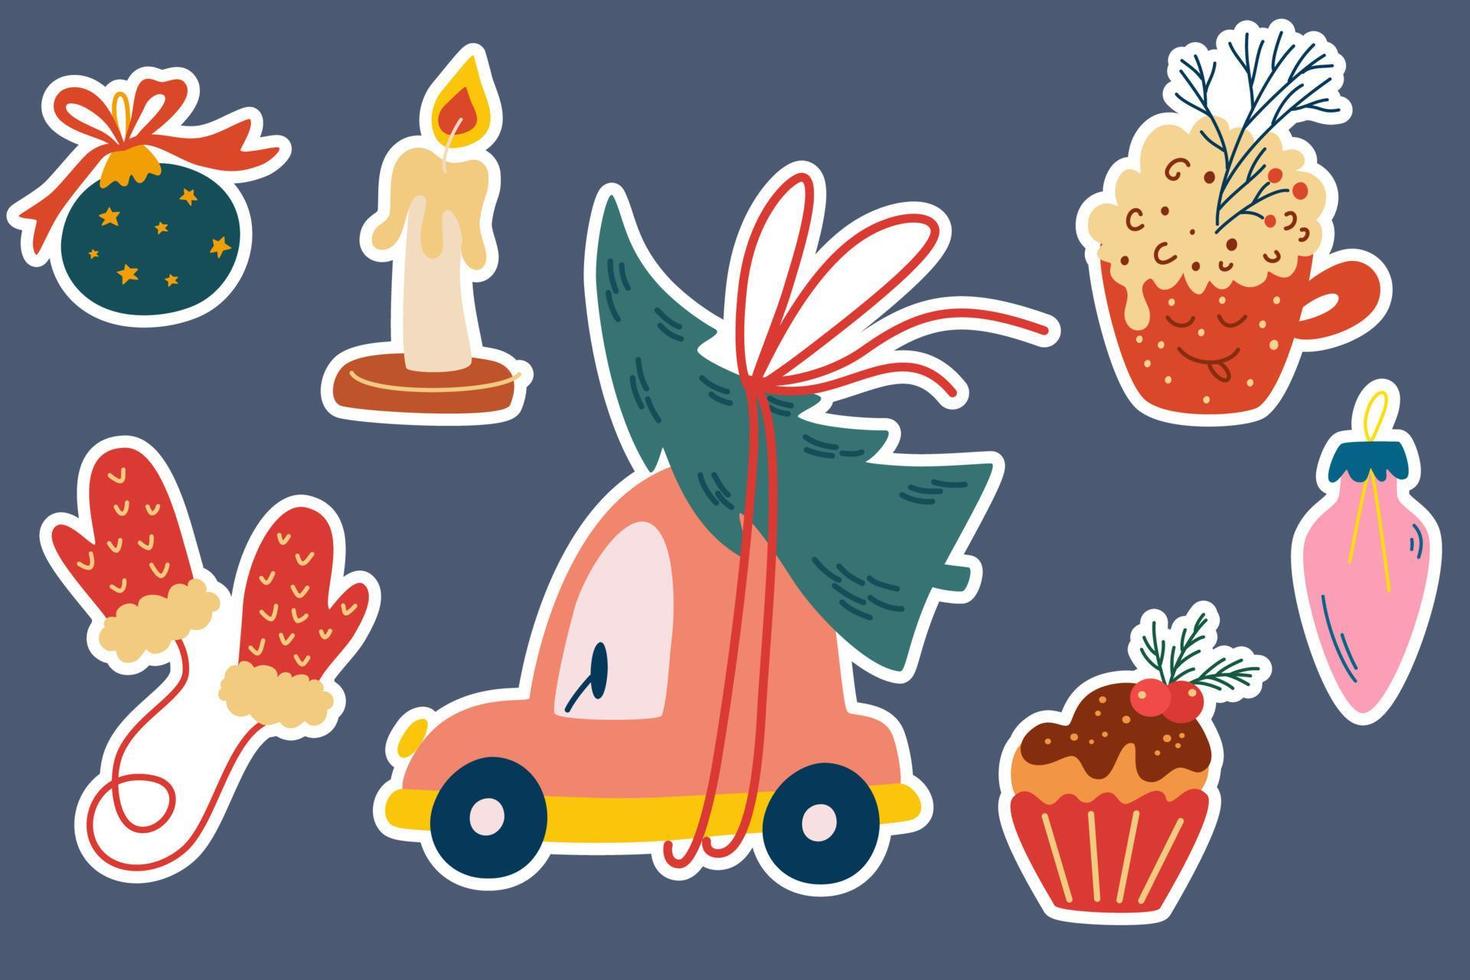 adesivos de natal. carro com uma árvore de natal, decorações, luvas, balões, doces e velas perfeitos para cartões, convites, flayers. ilustração de férias dos desenhos animados do vetor. vetor